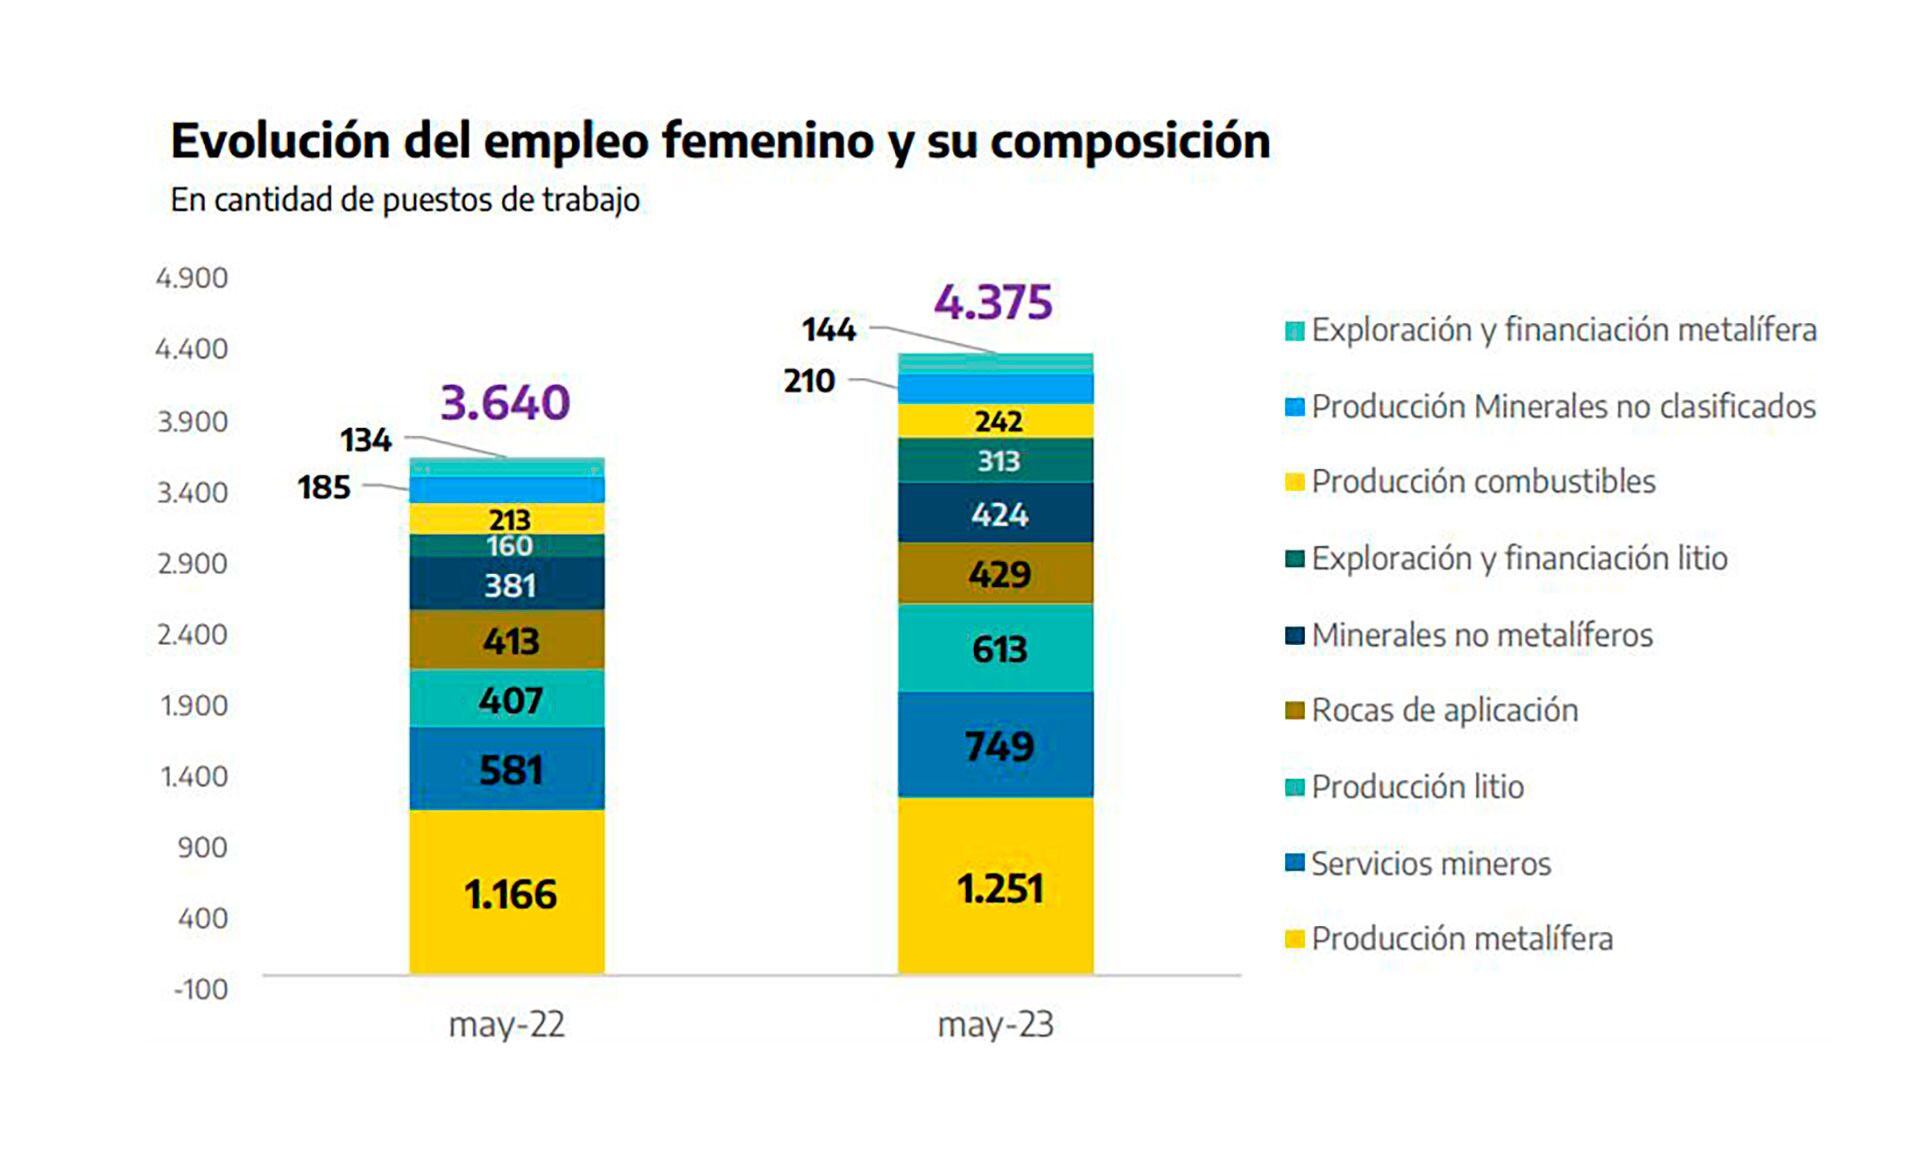 El gráfico muestra el aumento del empleo femenino en la minería